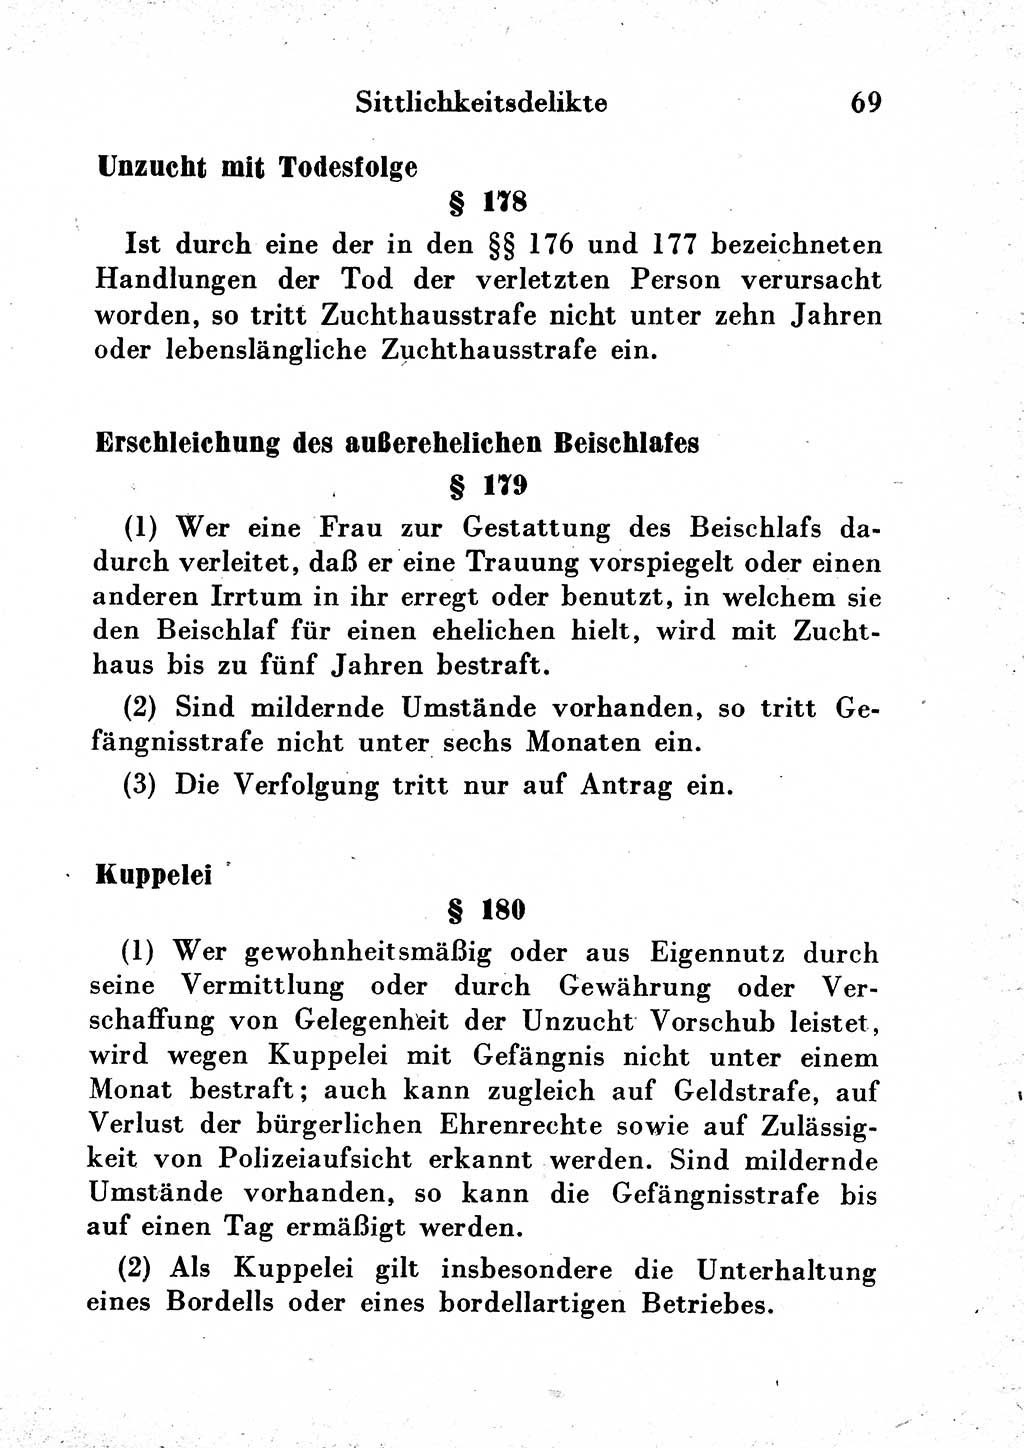 Strafgesetzbuch (StGB) und andere Strafgesetze [Deutsche Demokratische Republik (DDR)] 1954, Seite 69 (StGB Strafges. DDR 1954, S. 69)